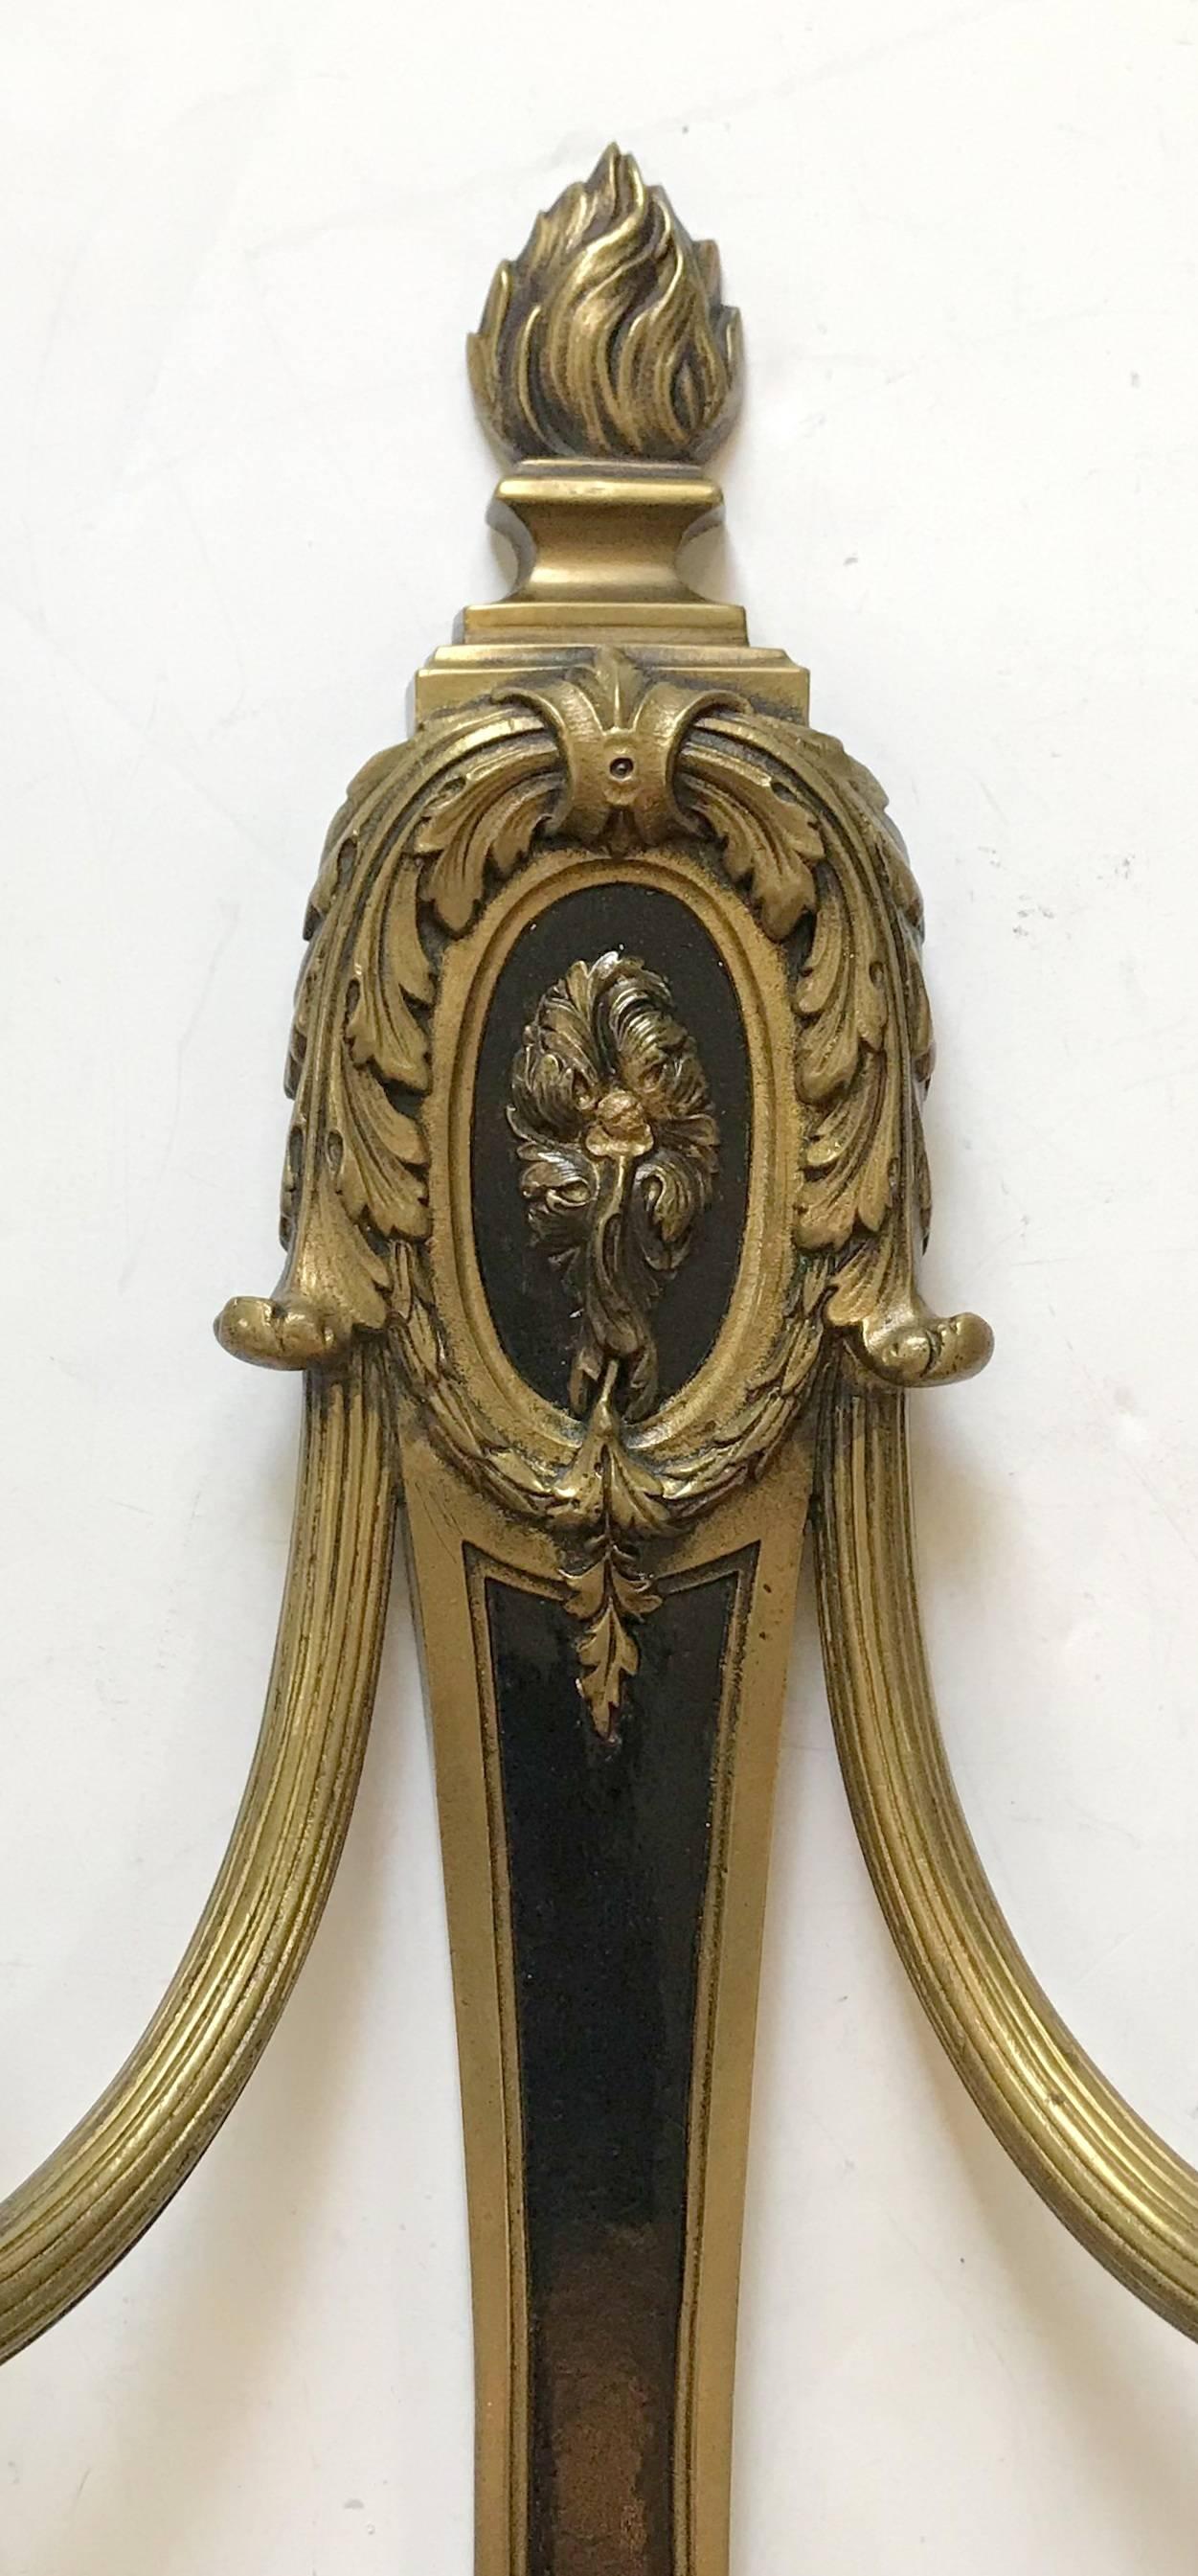 Merveilleux ensemble de trois (3) appliques néoclassiques françaises Empire patinées et en bronze doré à filigrane avec centre à deux bras, complètement reconnectées avec de nouvelles douilles de candélabres. A la manière de Caldwell.

Vendu par